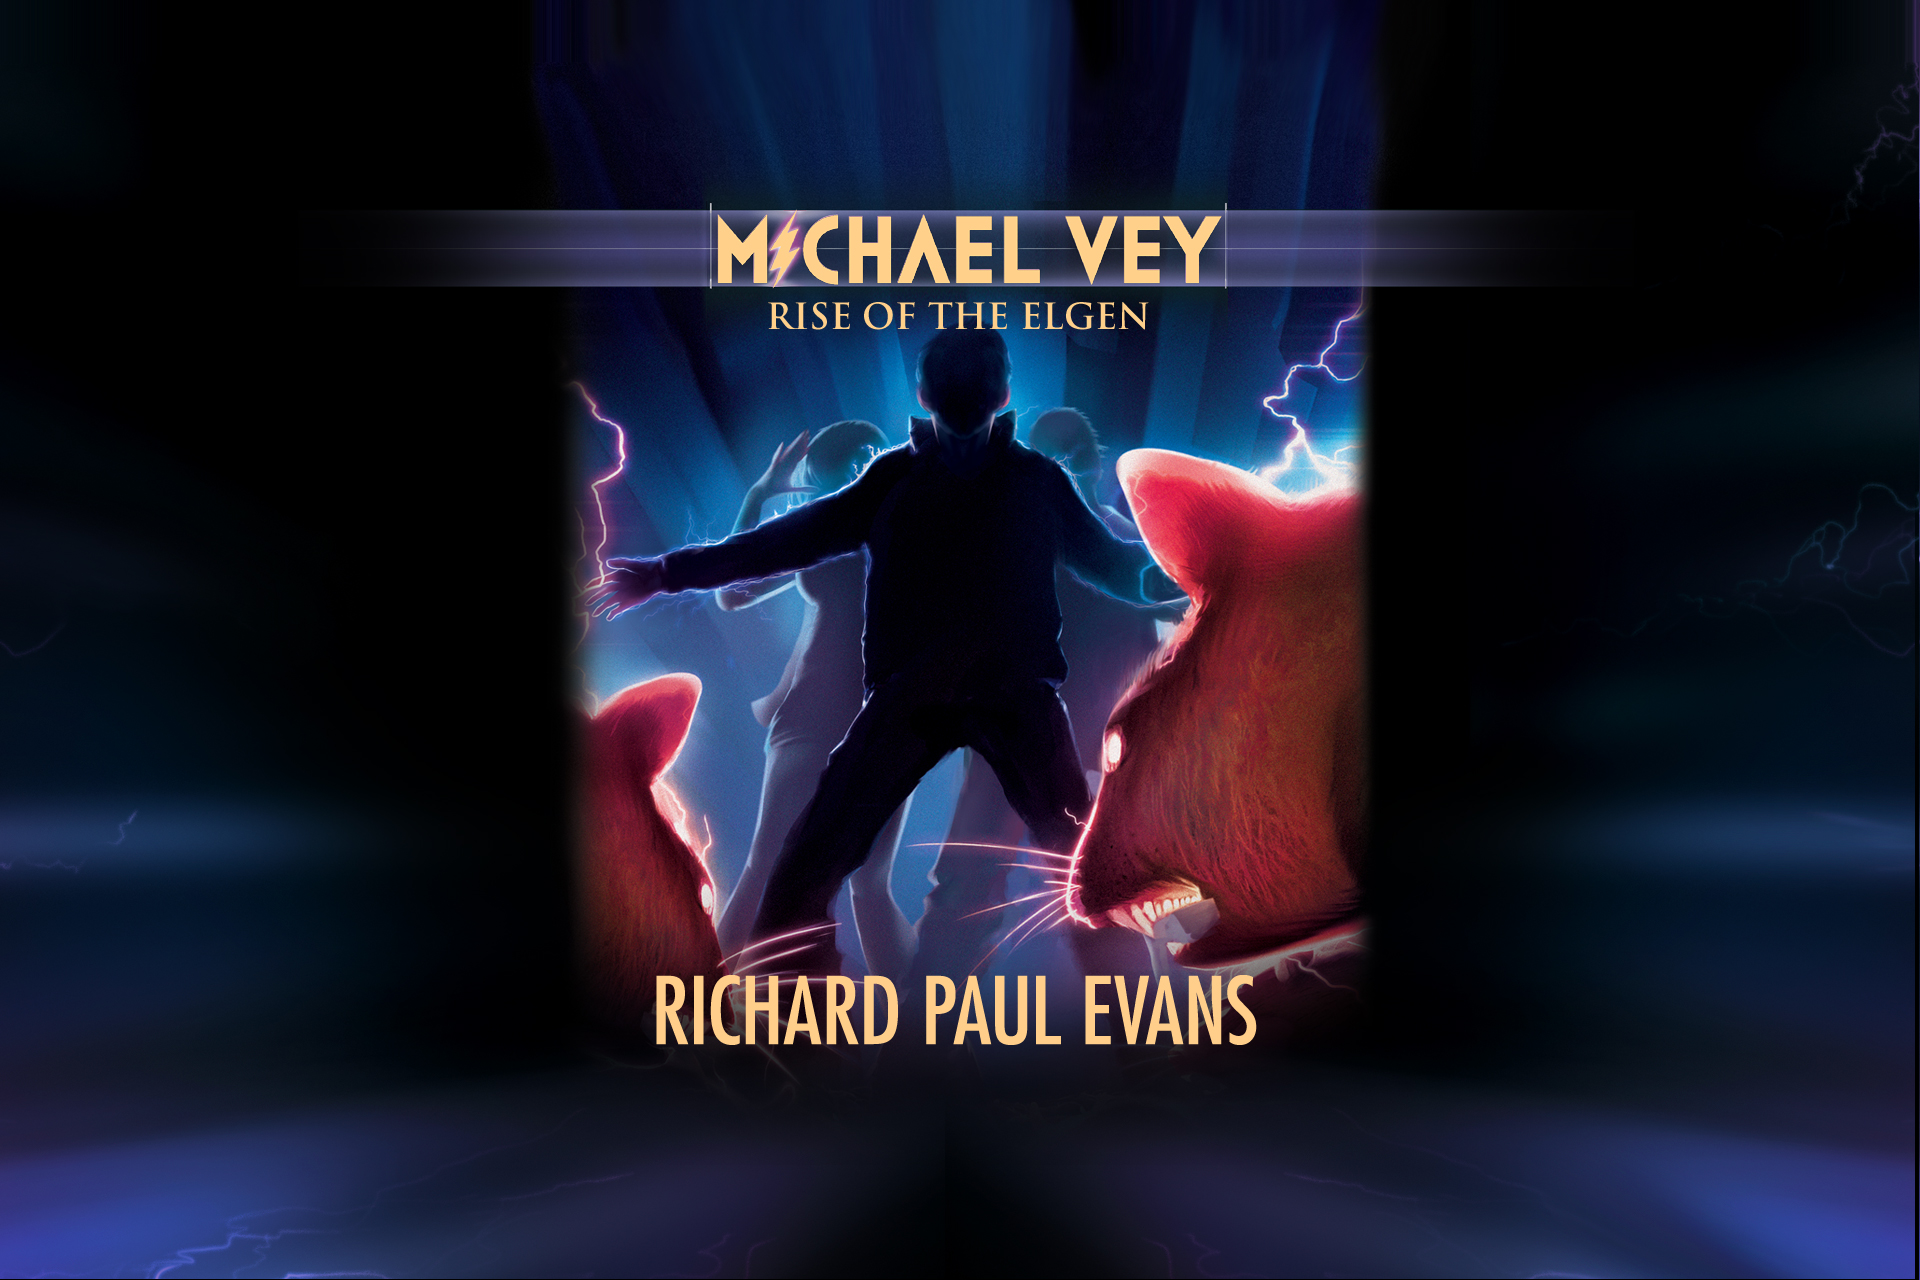 Michael Vey - For Fans: Downloadables